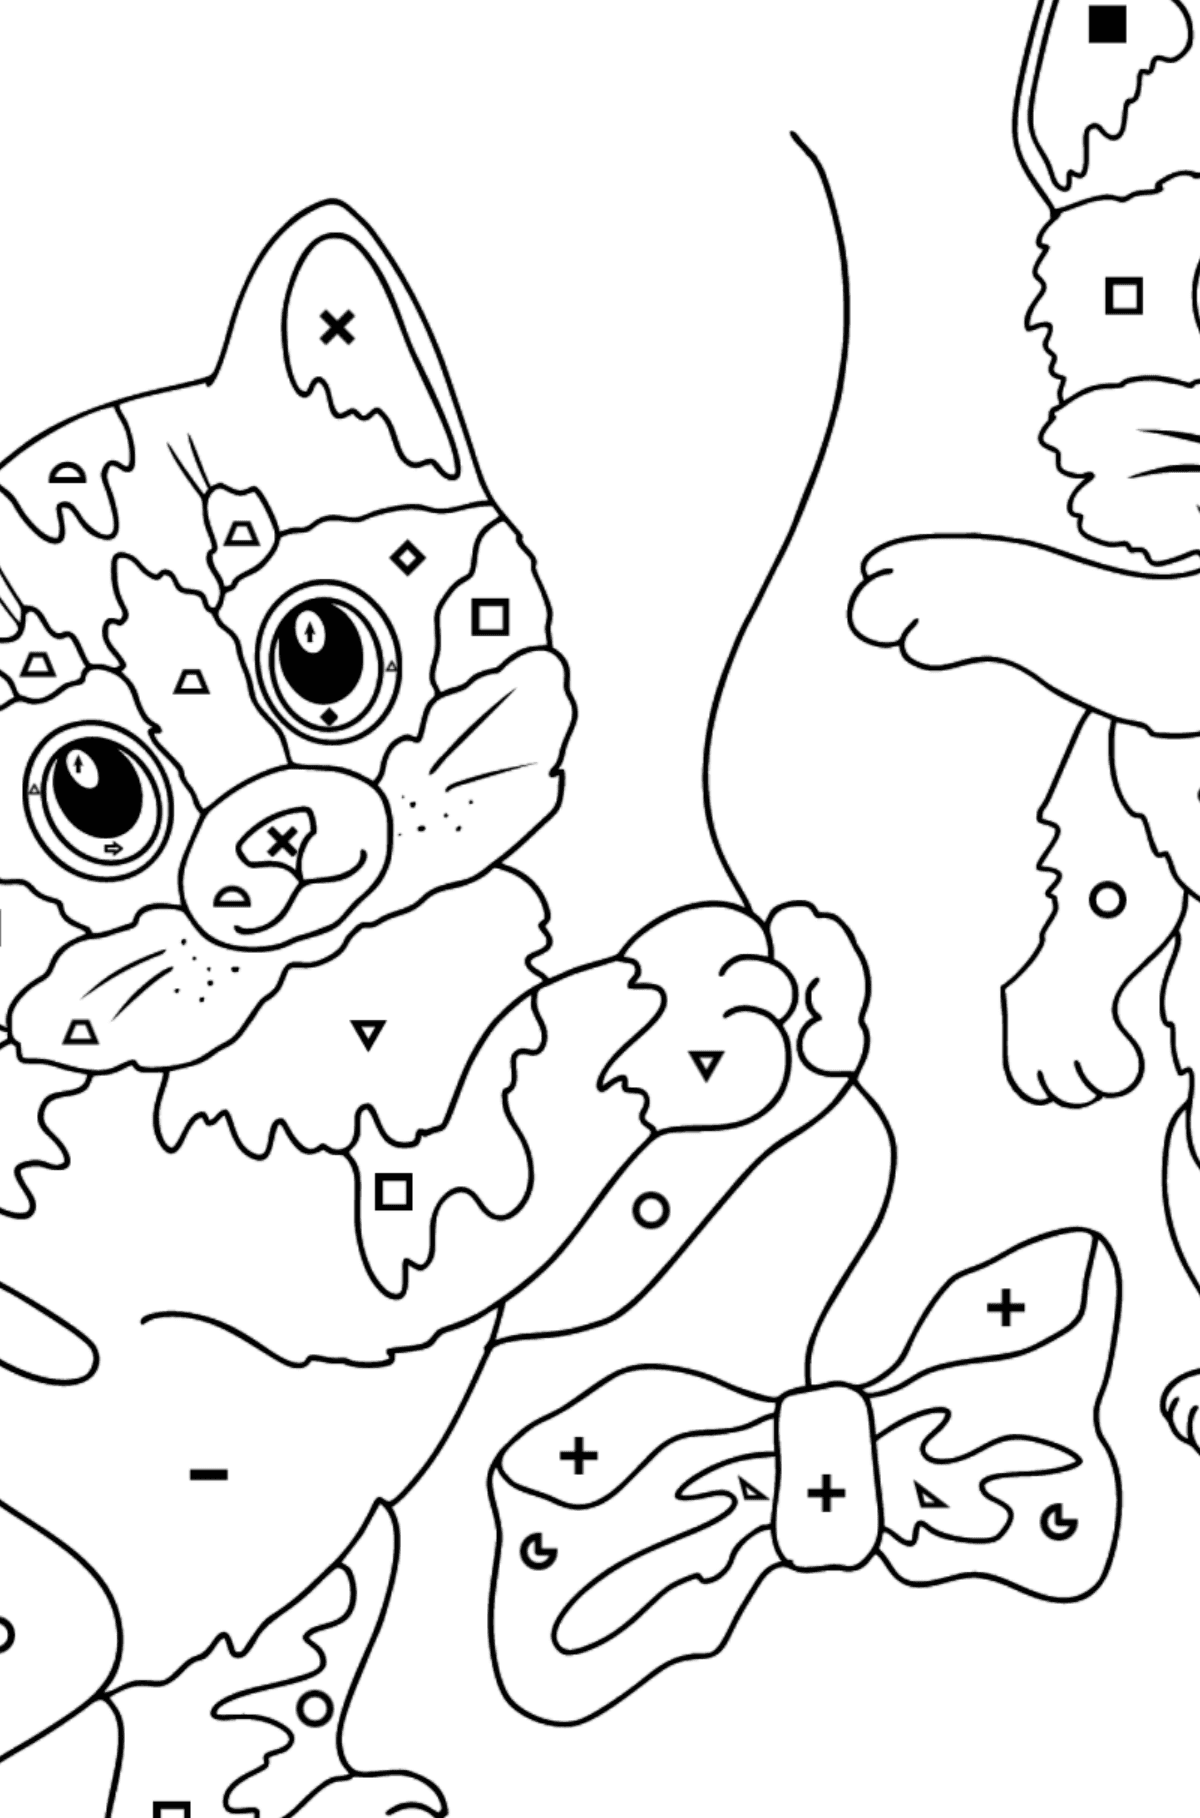 Tegning til fargelegging fine kattunger (vanskelig) - Fargelegge etter symboler og geometriske former for barn